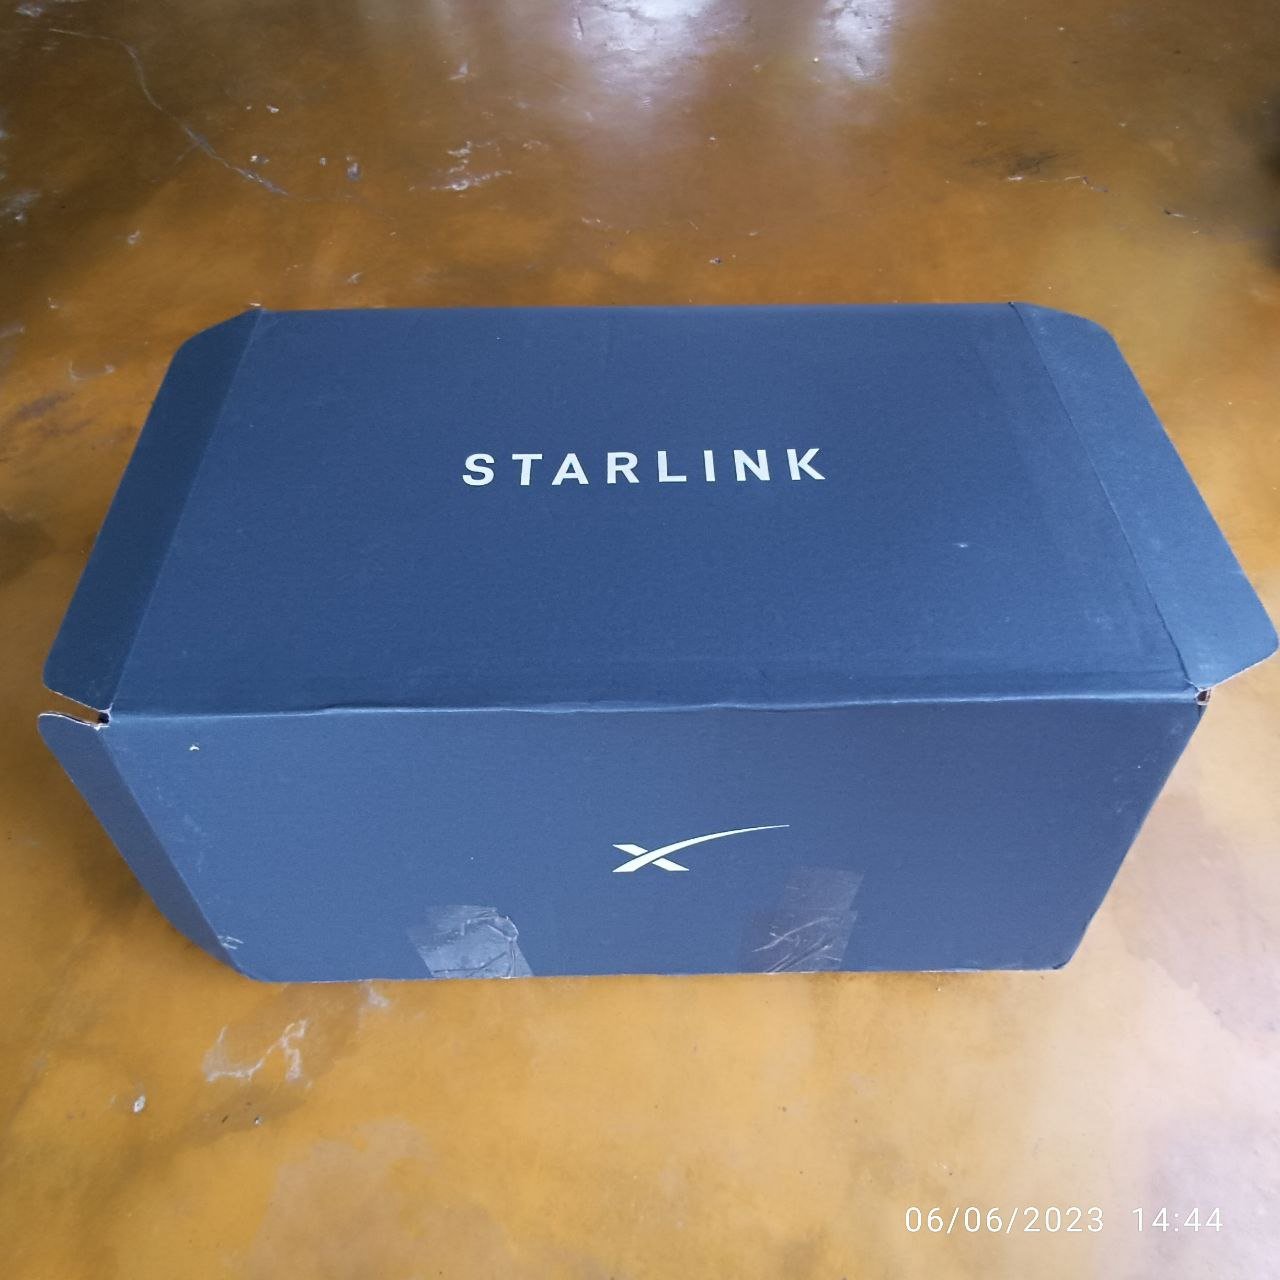 starlink package